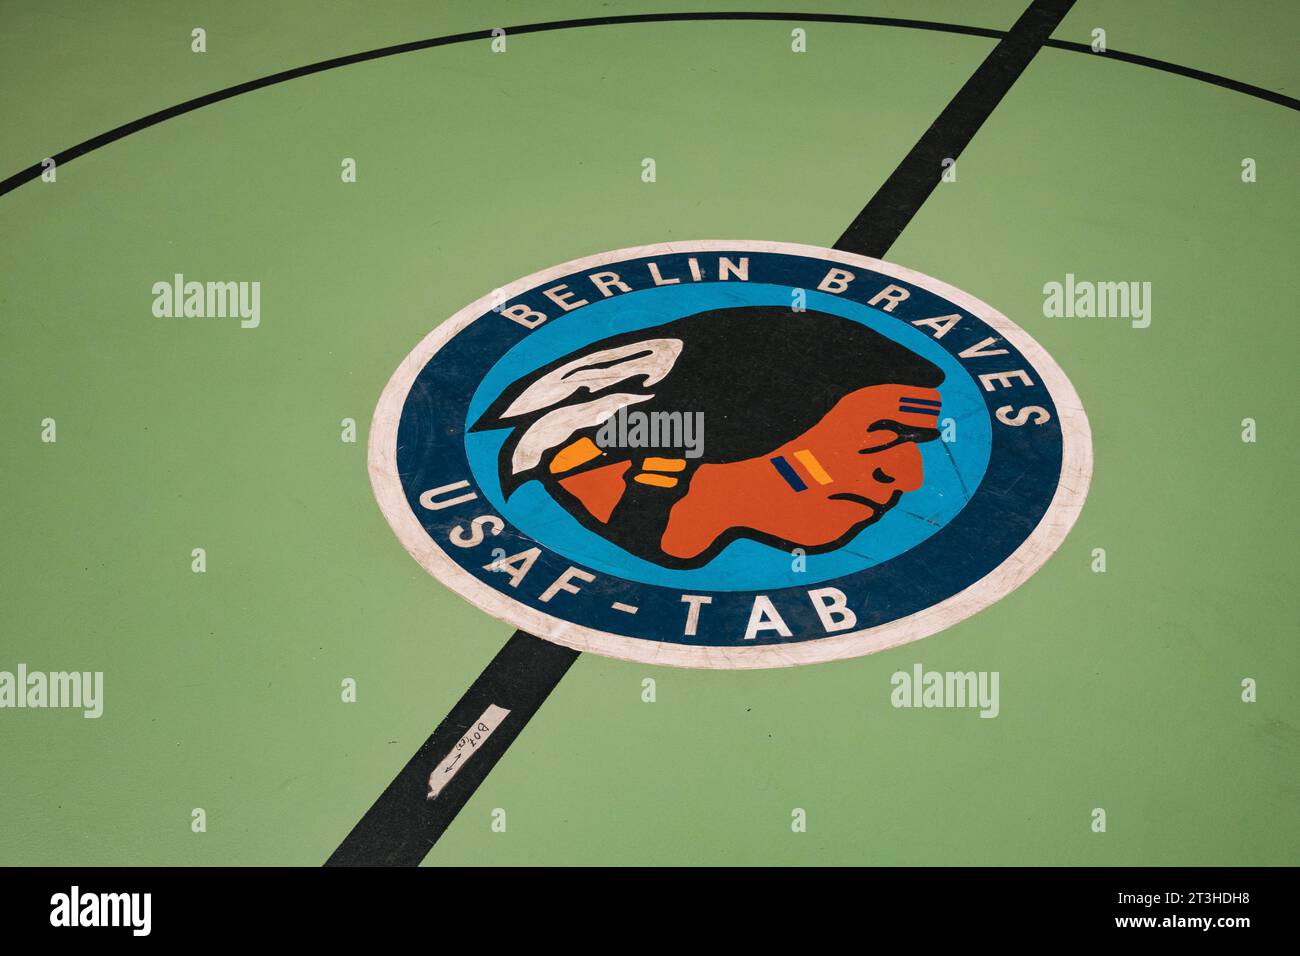 Das handbemalte Siegel des alten Basketballteams der United States Air Force Berlin Braves am Flughafen Tempelhof. Mit einem indianischen Profil Stockfoto